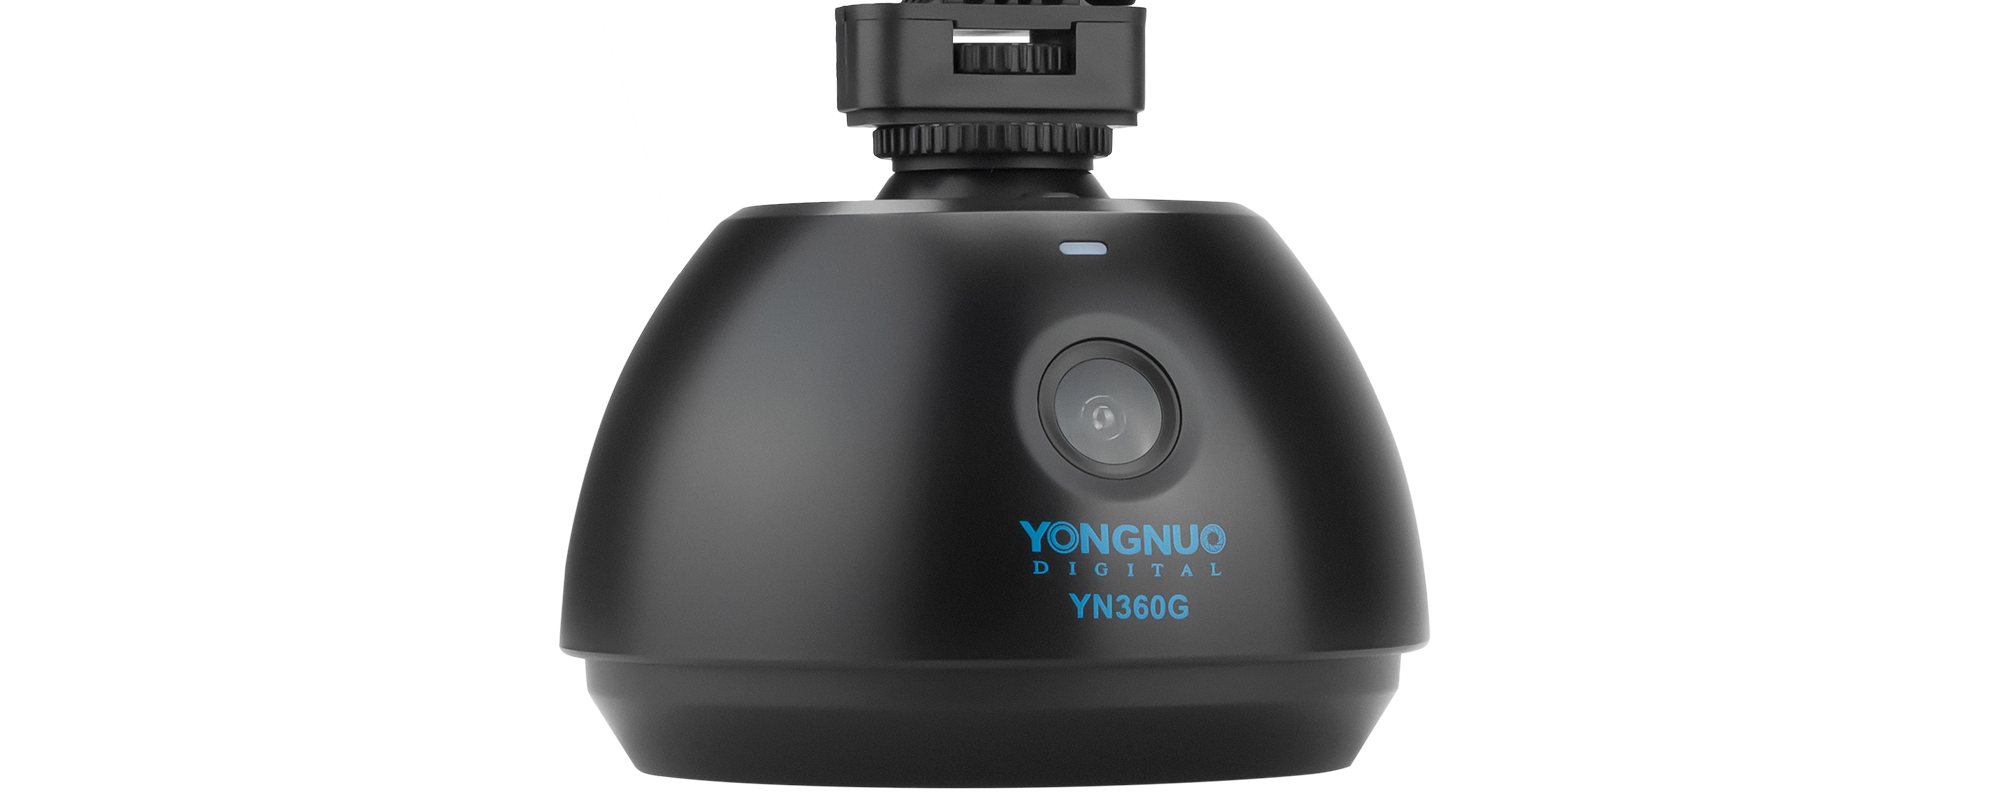 Głowica automatyczna Yongnuo YN360G - Do 5 metrów zasięgu